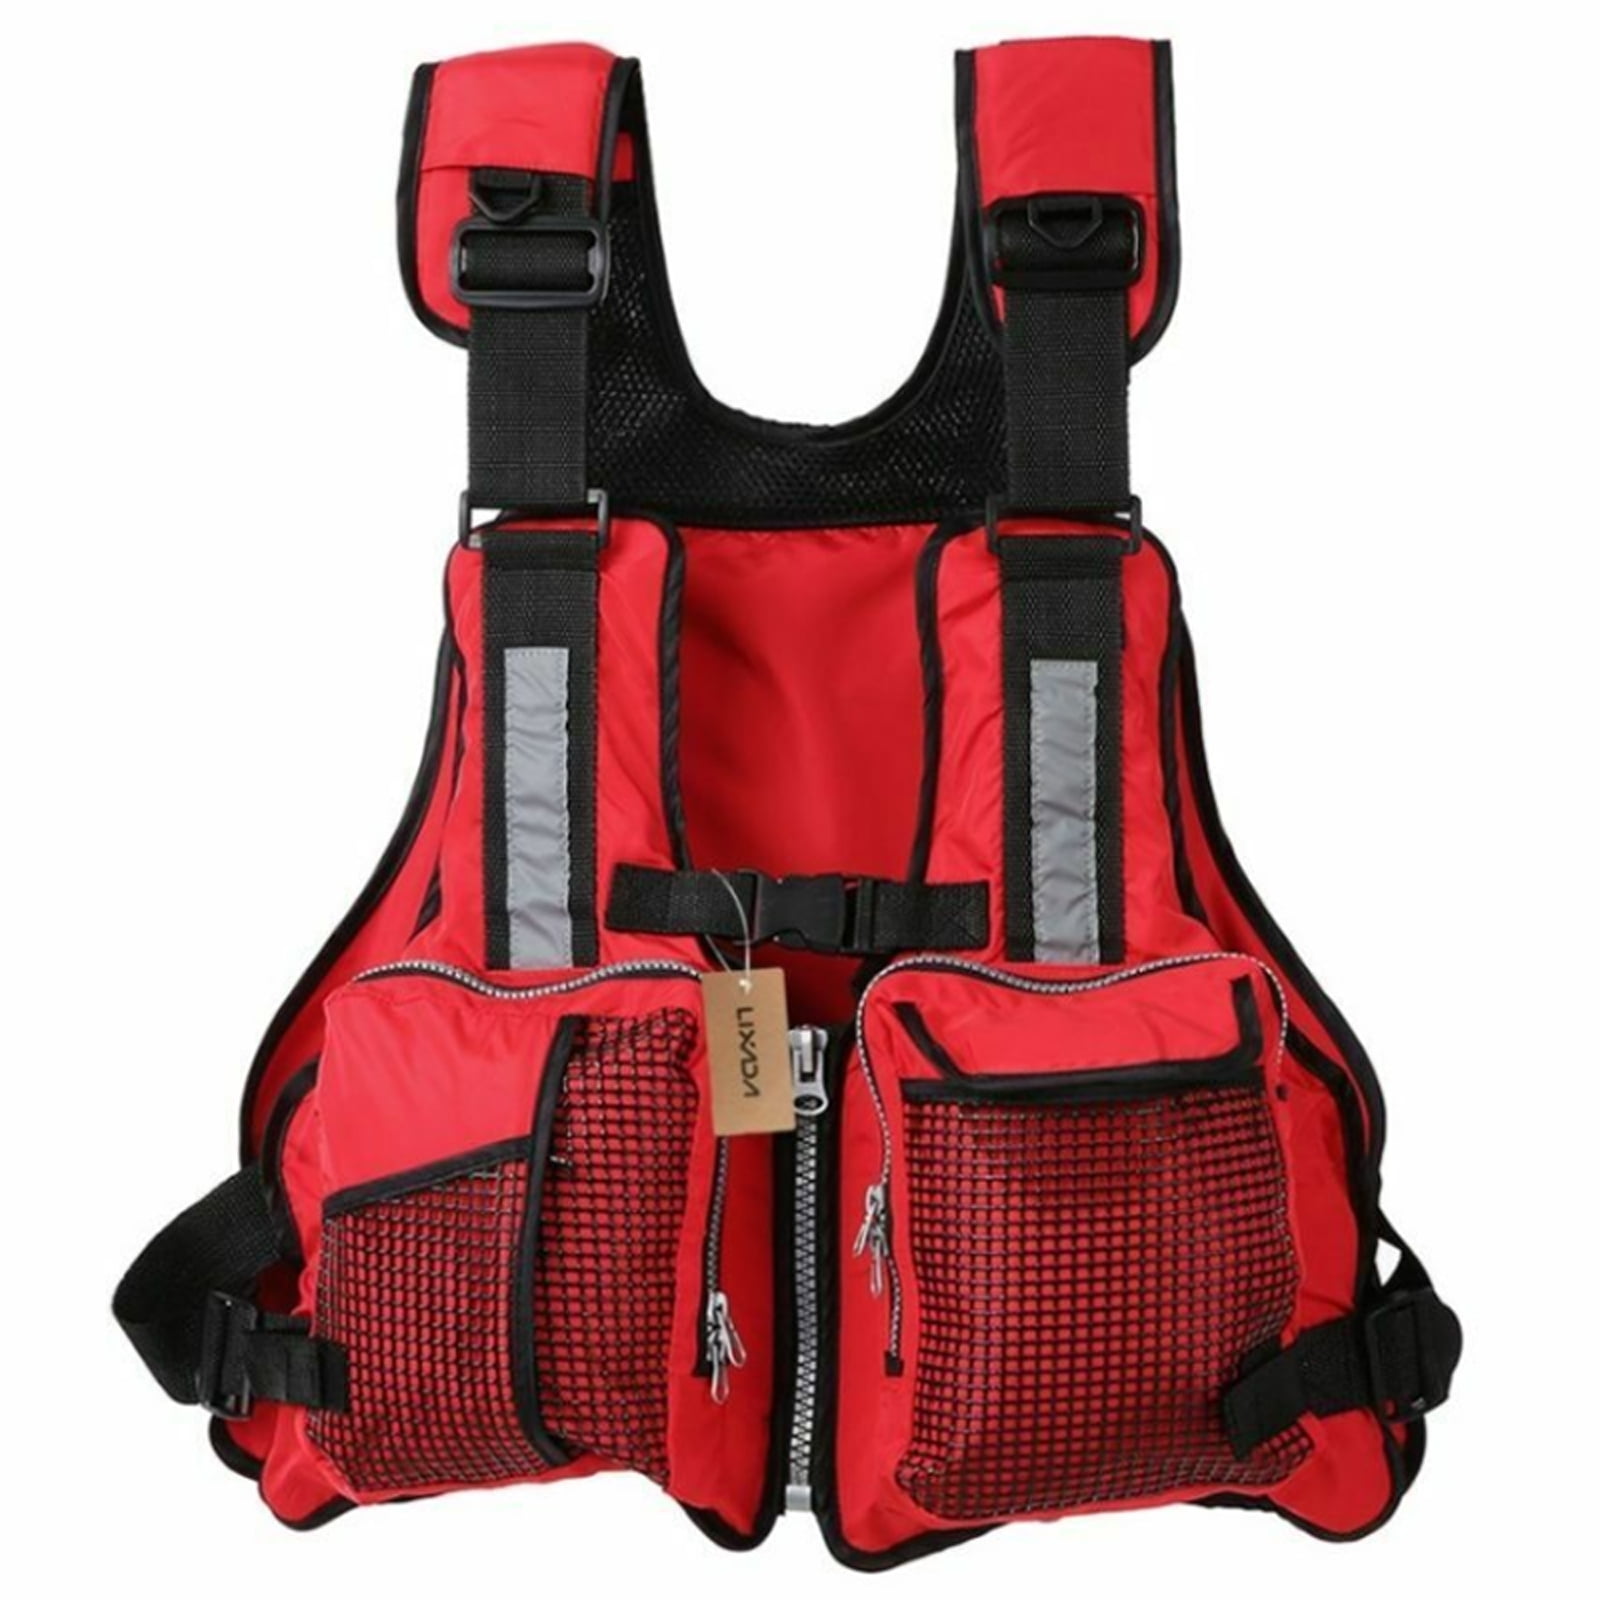 Adult Universal Fishing Life Jacket, Kayak Life Vest Sailing, Kayaking  Canoeing Buoyancy Aid Waistcoat with Multi-Pockets and Reflective Stripe